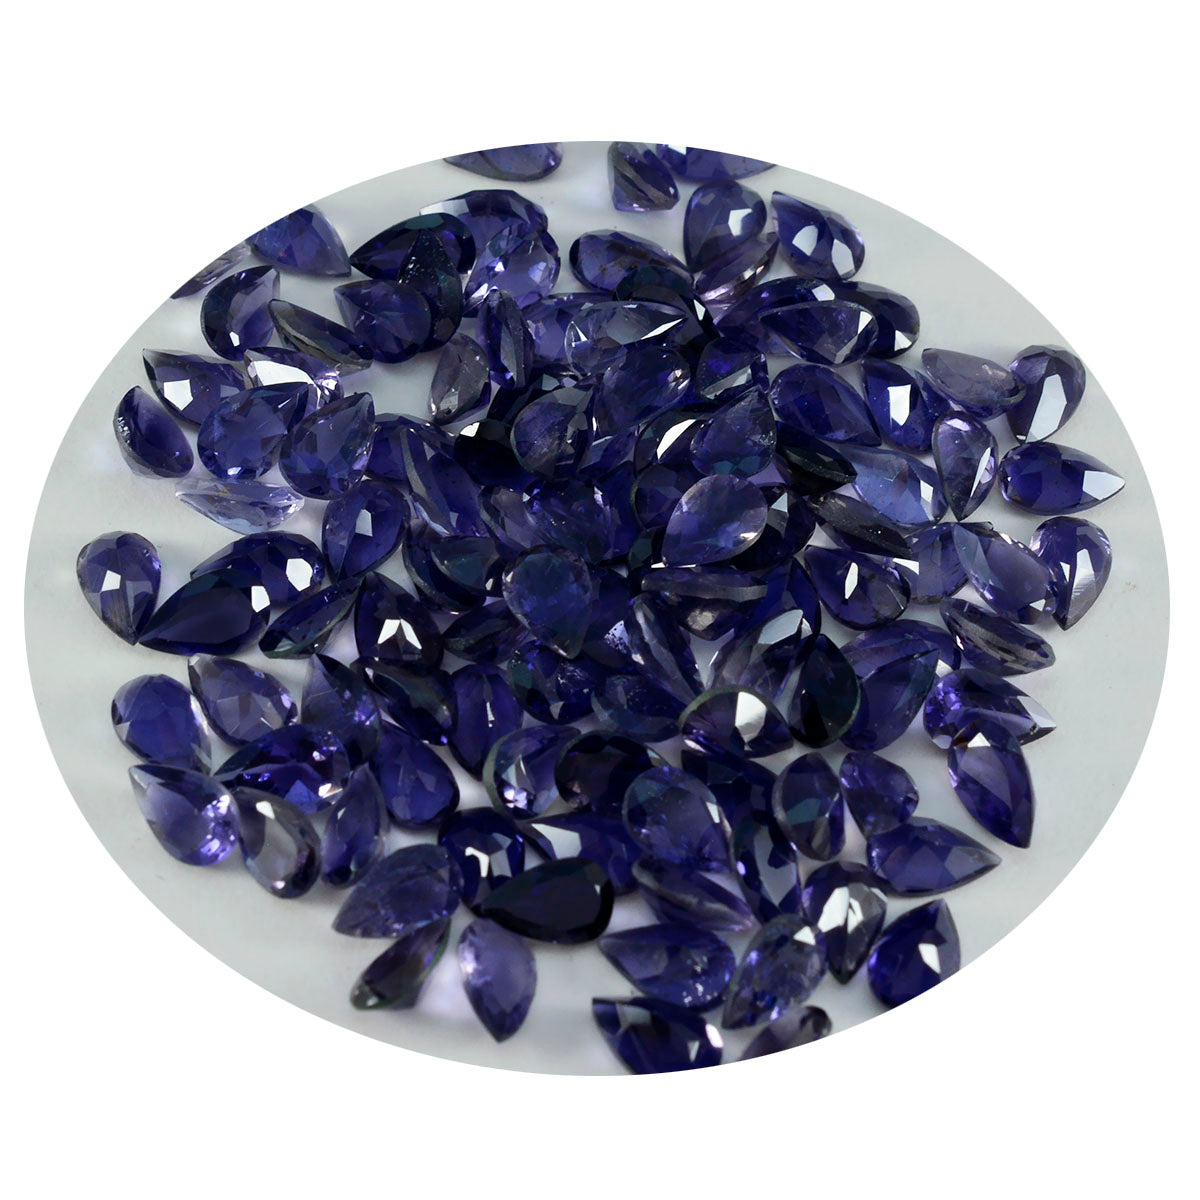 riyogems 1шт синий иолит ограненный 4х6 мм камень грушевидной формы хорошее качество